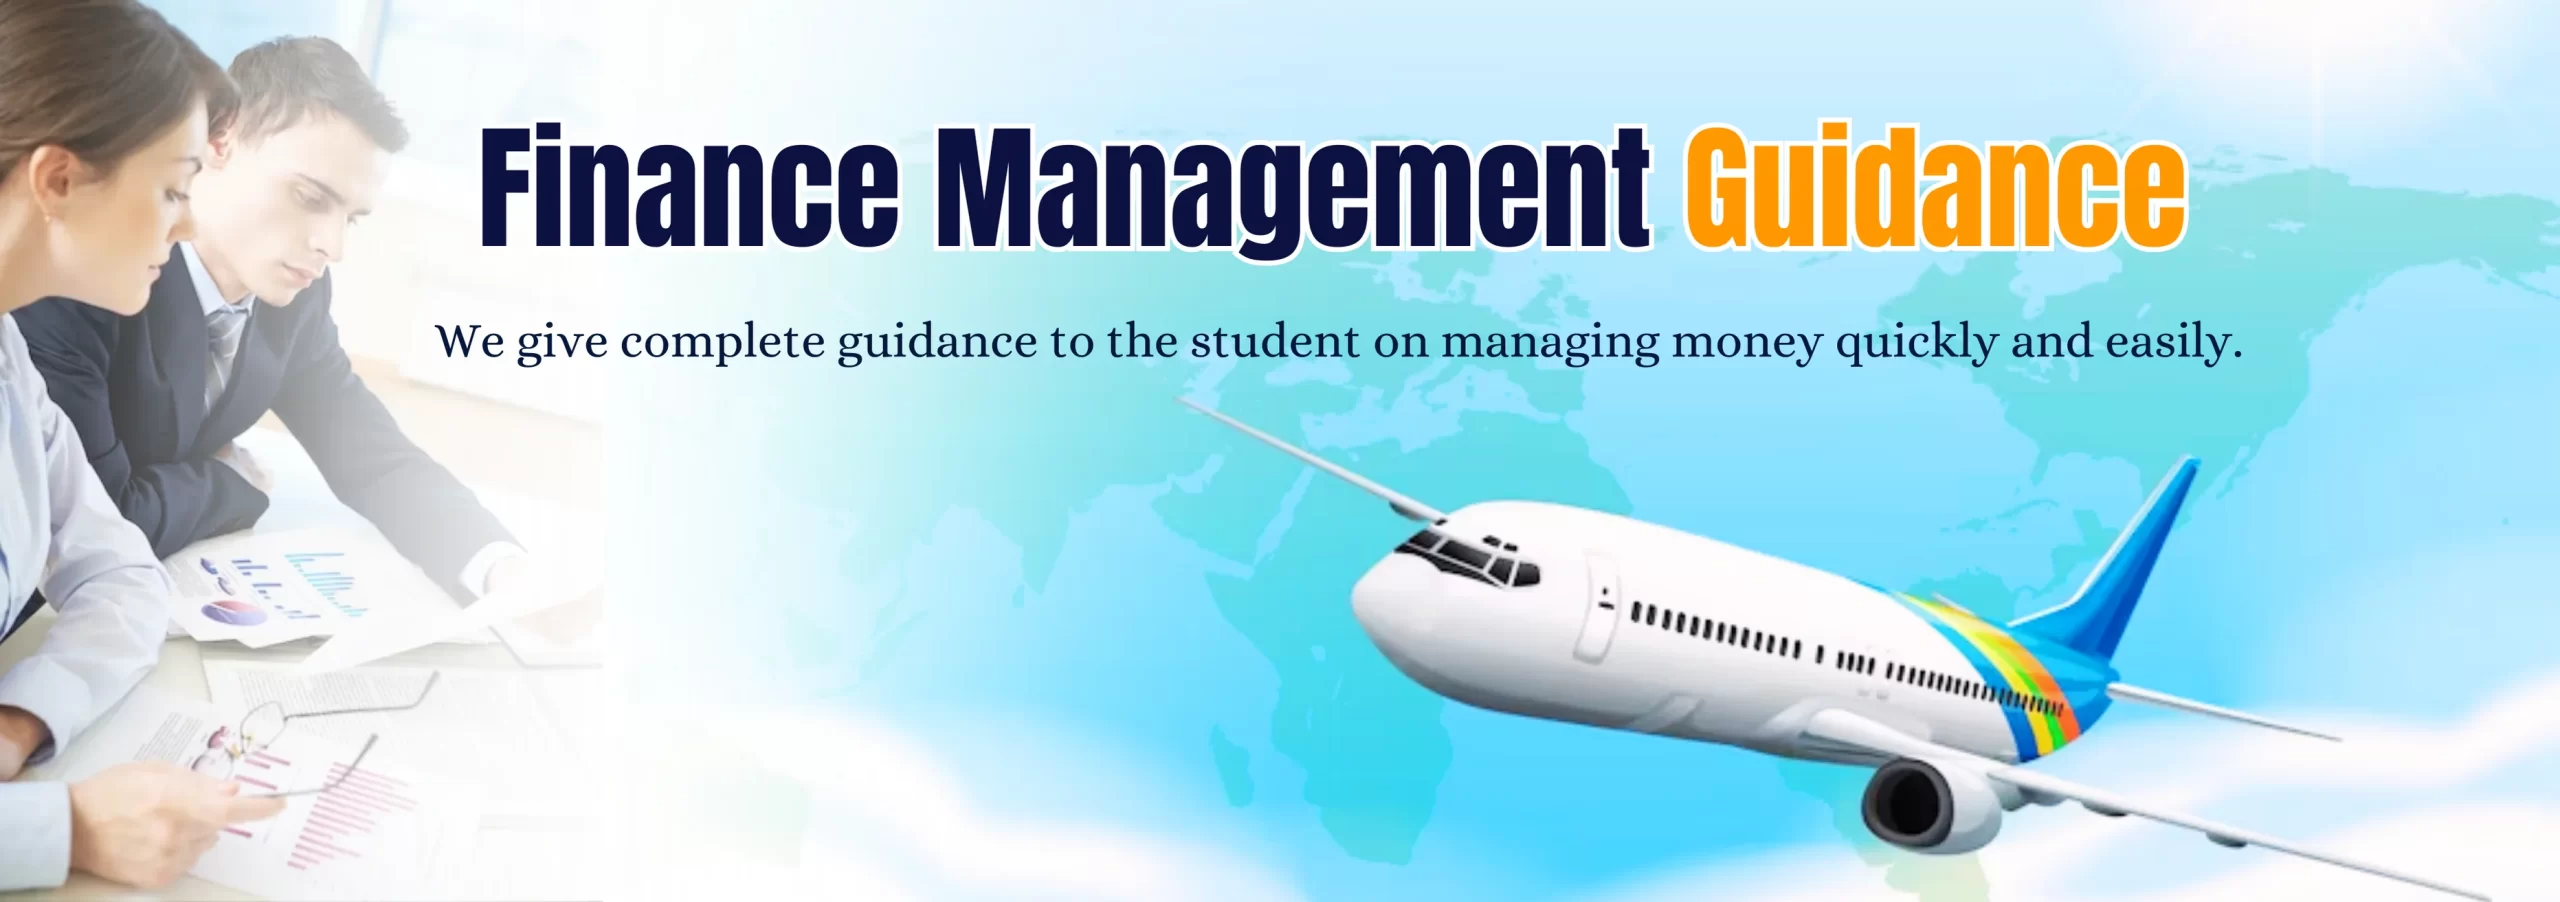 Finance Management Guidance at EduLaunchers